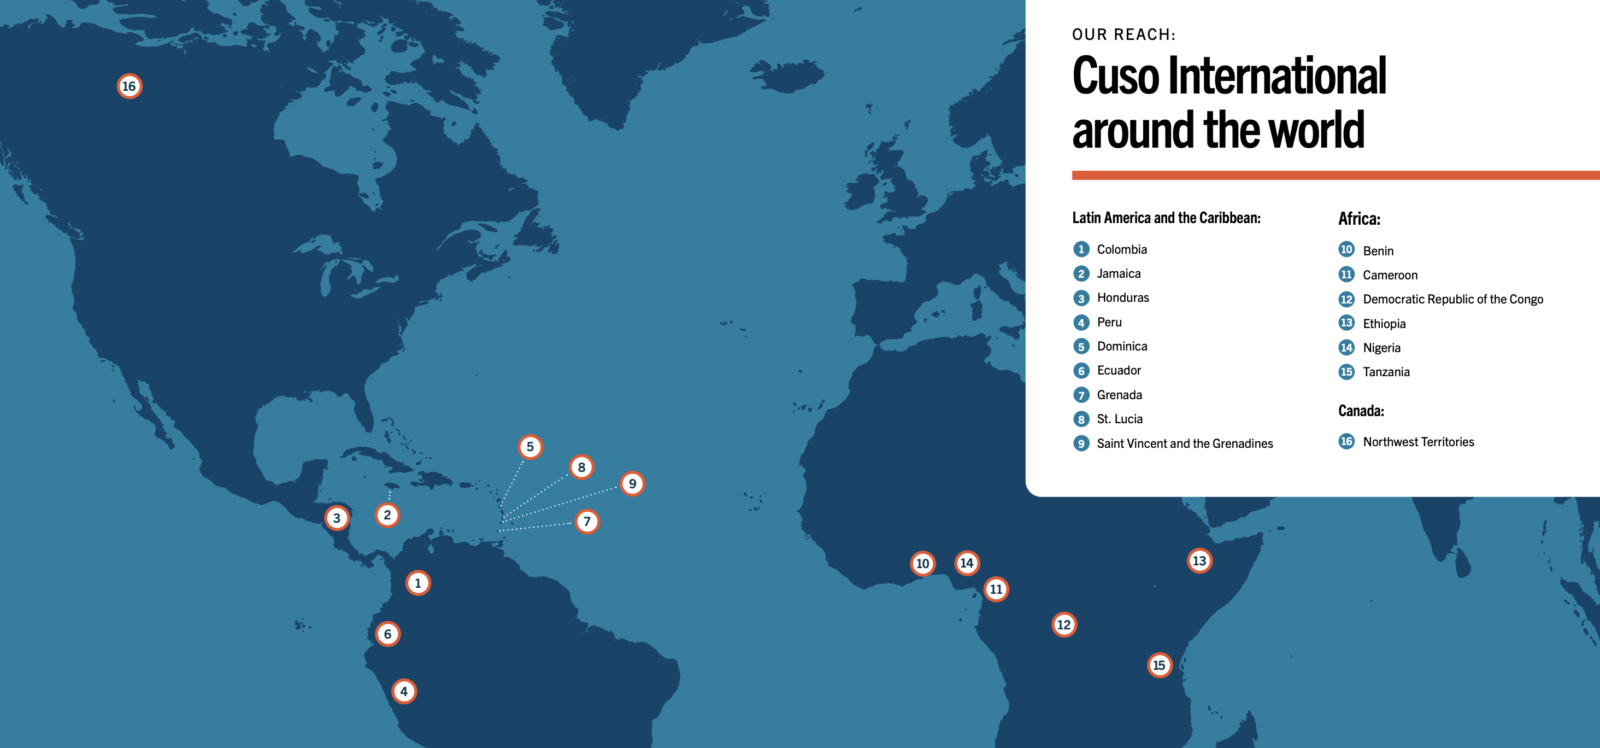 Cuso's reach in 2021-22